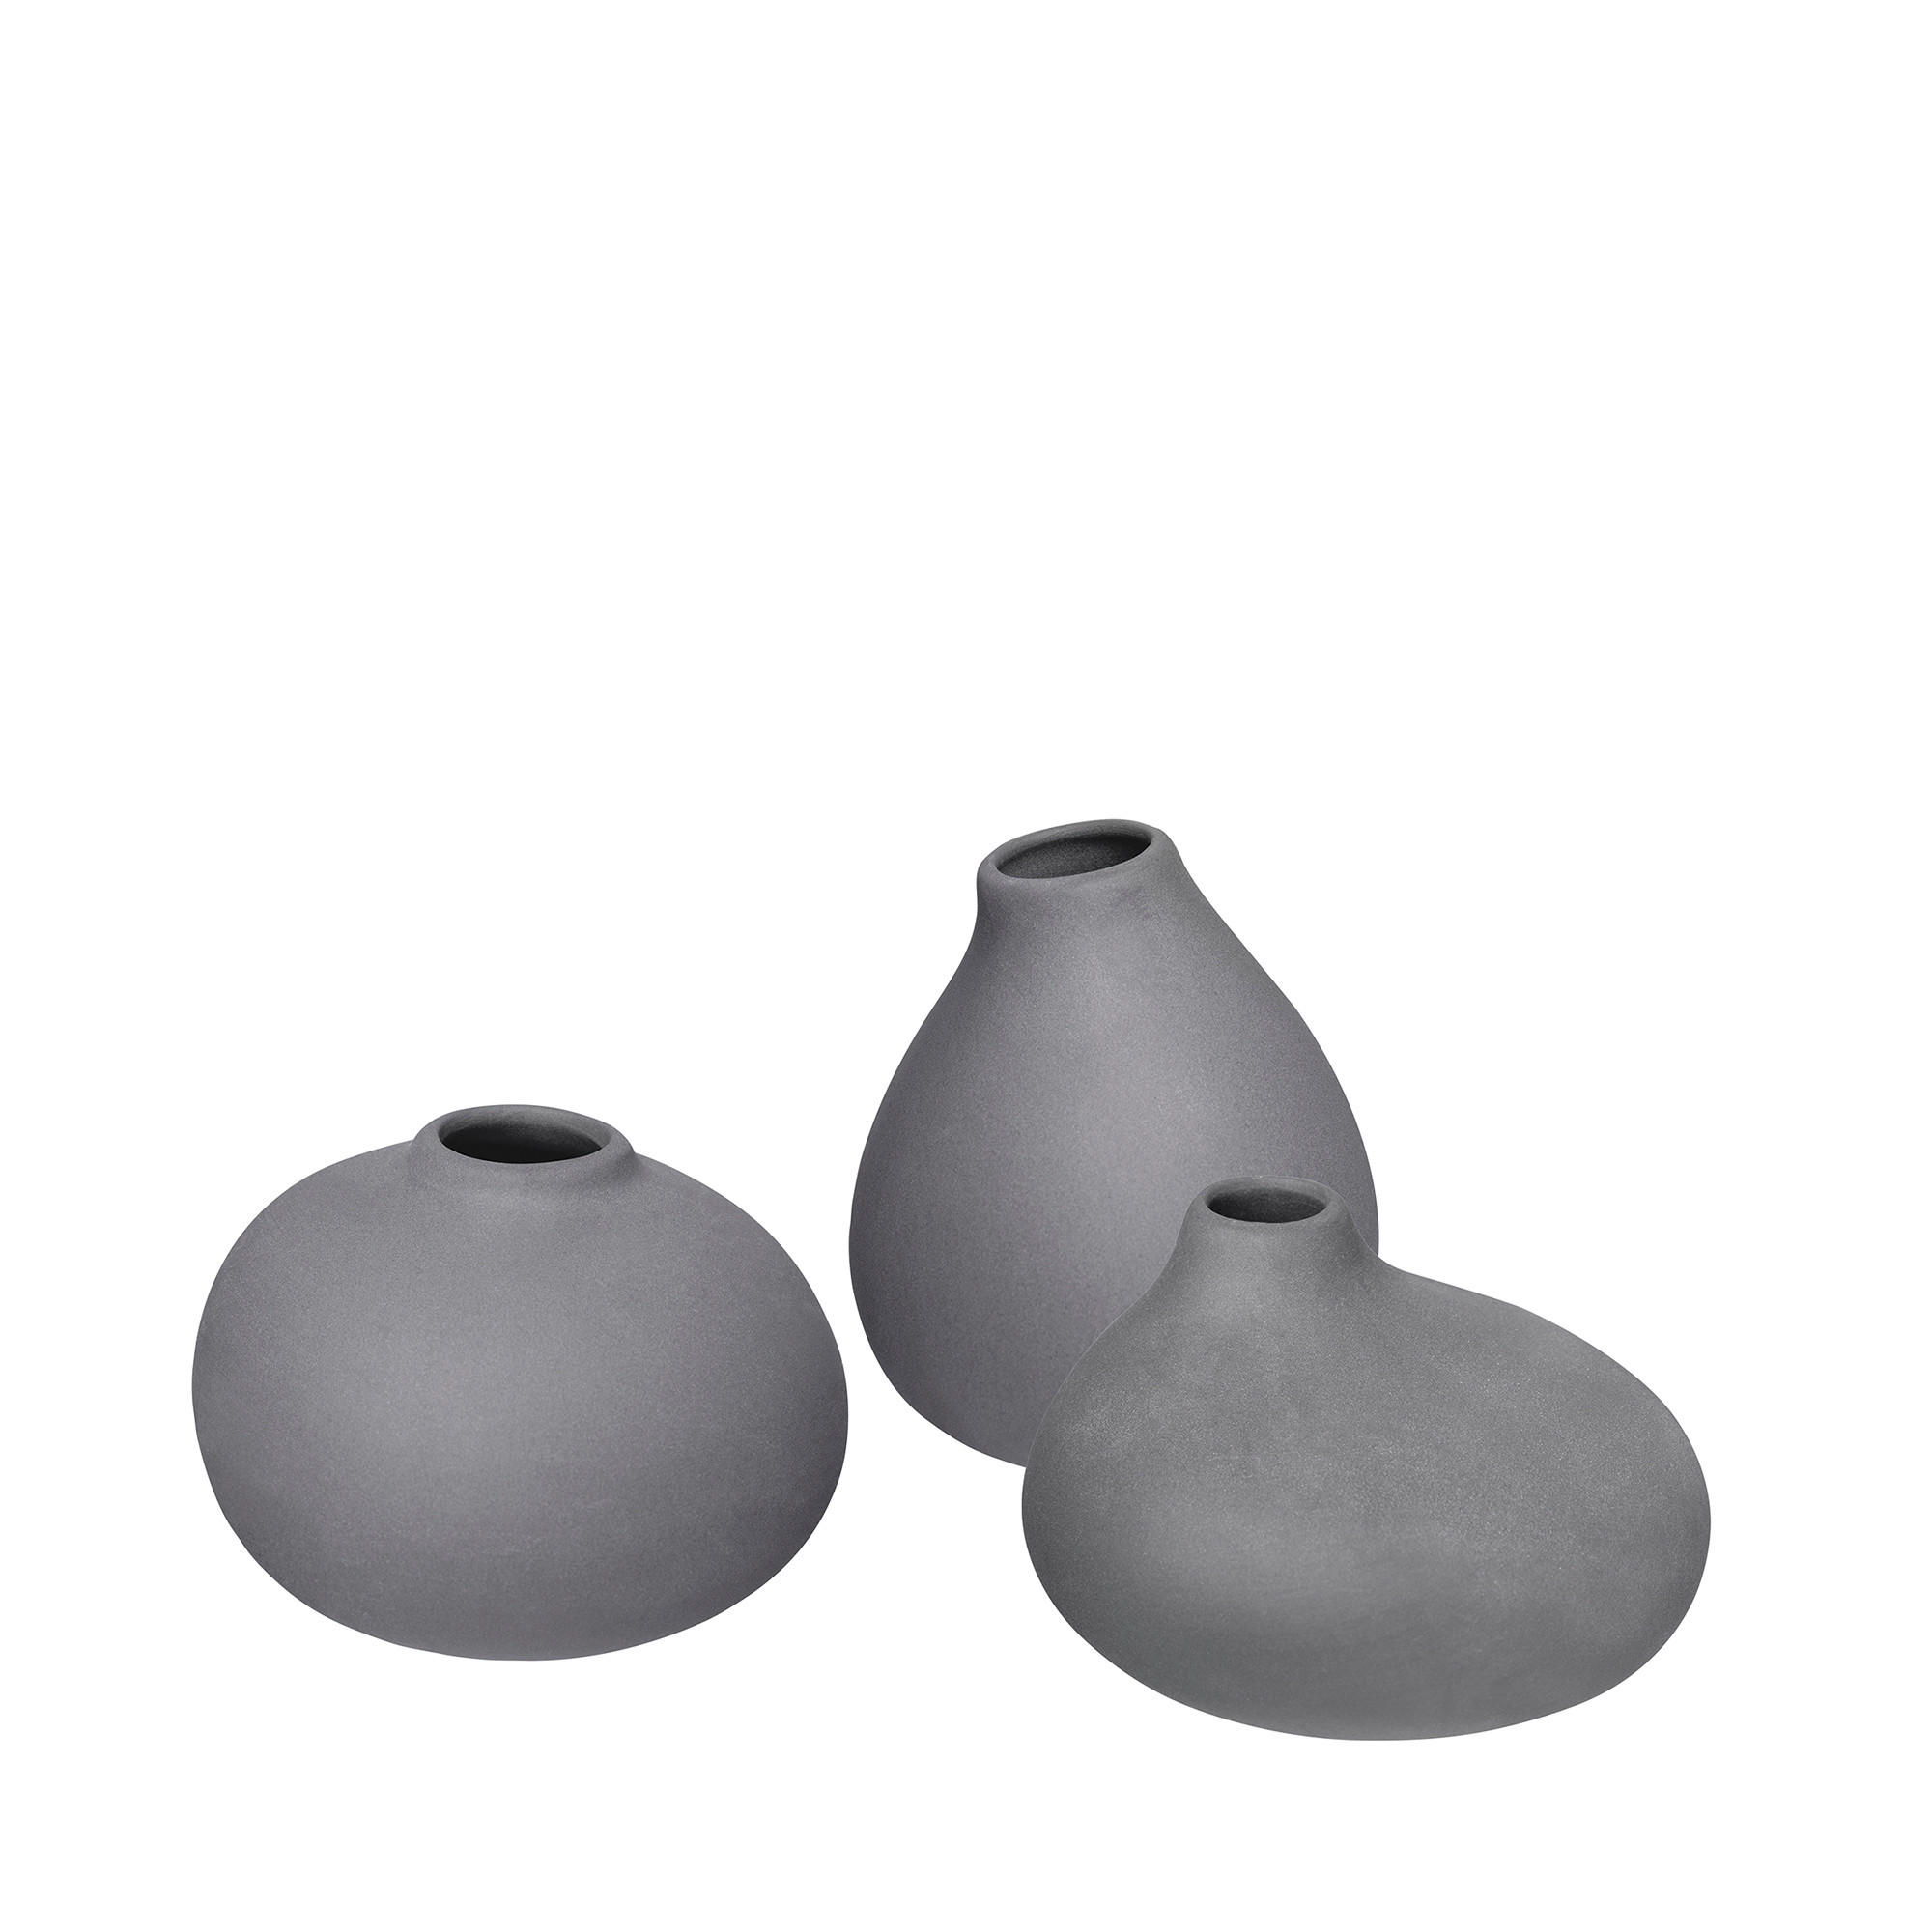 VASE NONA 6,5 cm  - Anthrazit/Altrosa, Design, Keramik (6,5/9/7cm) - Blomus